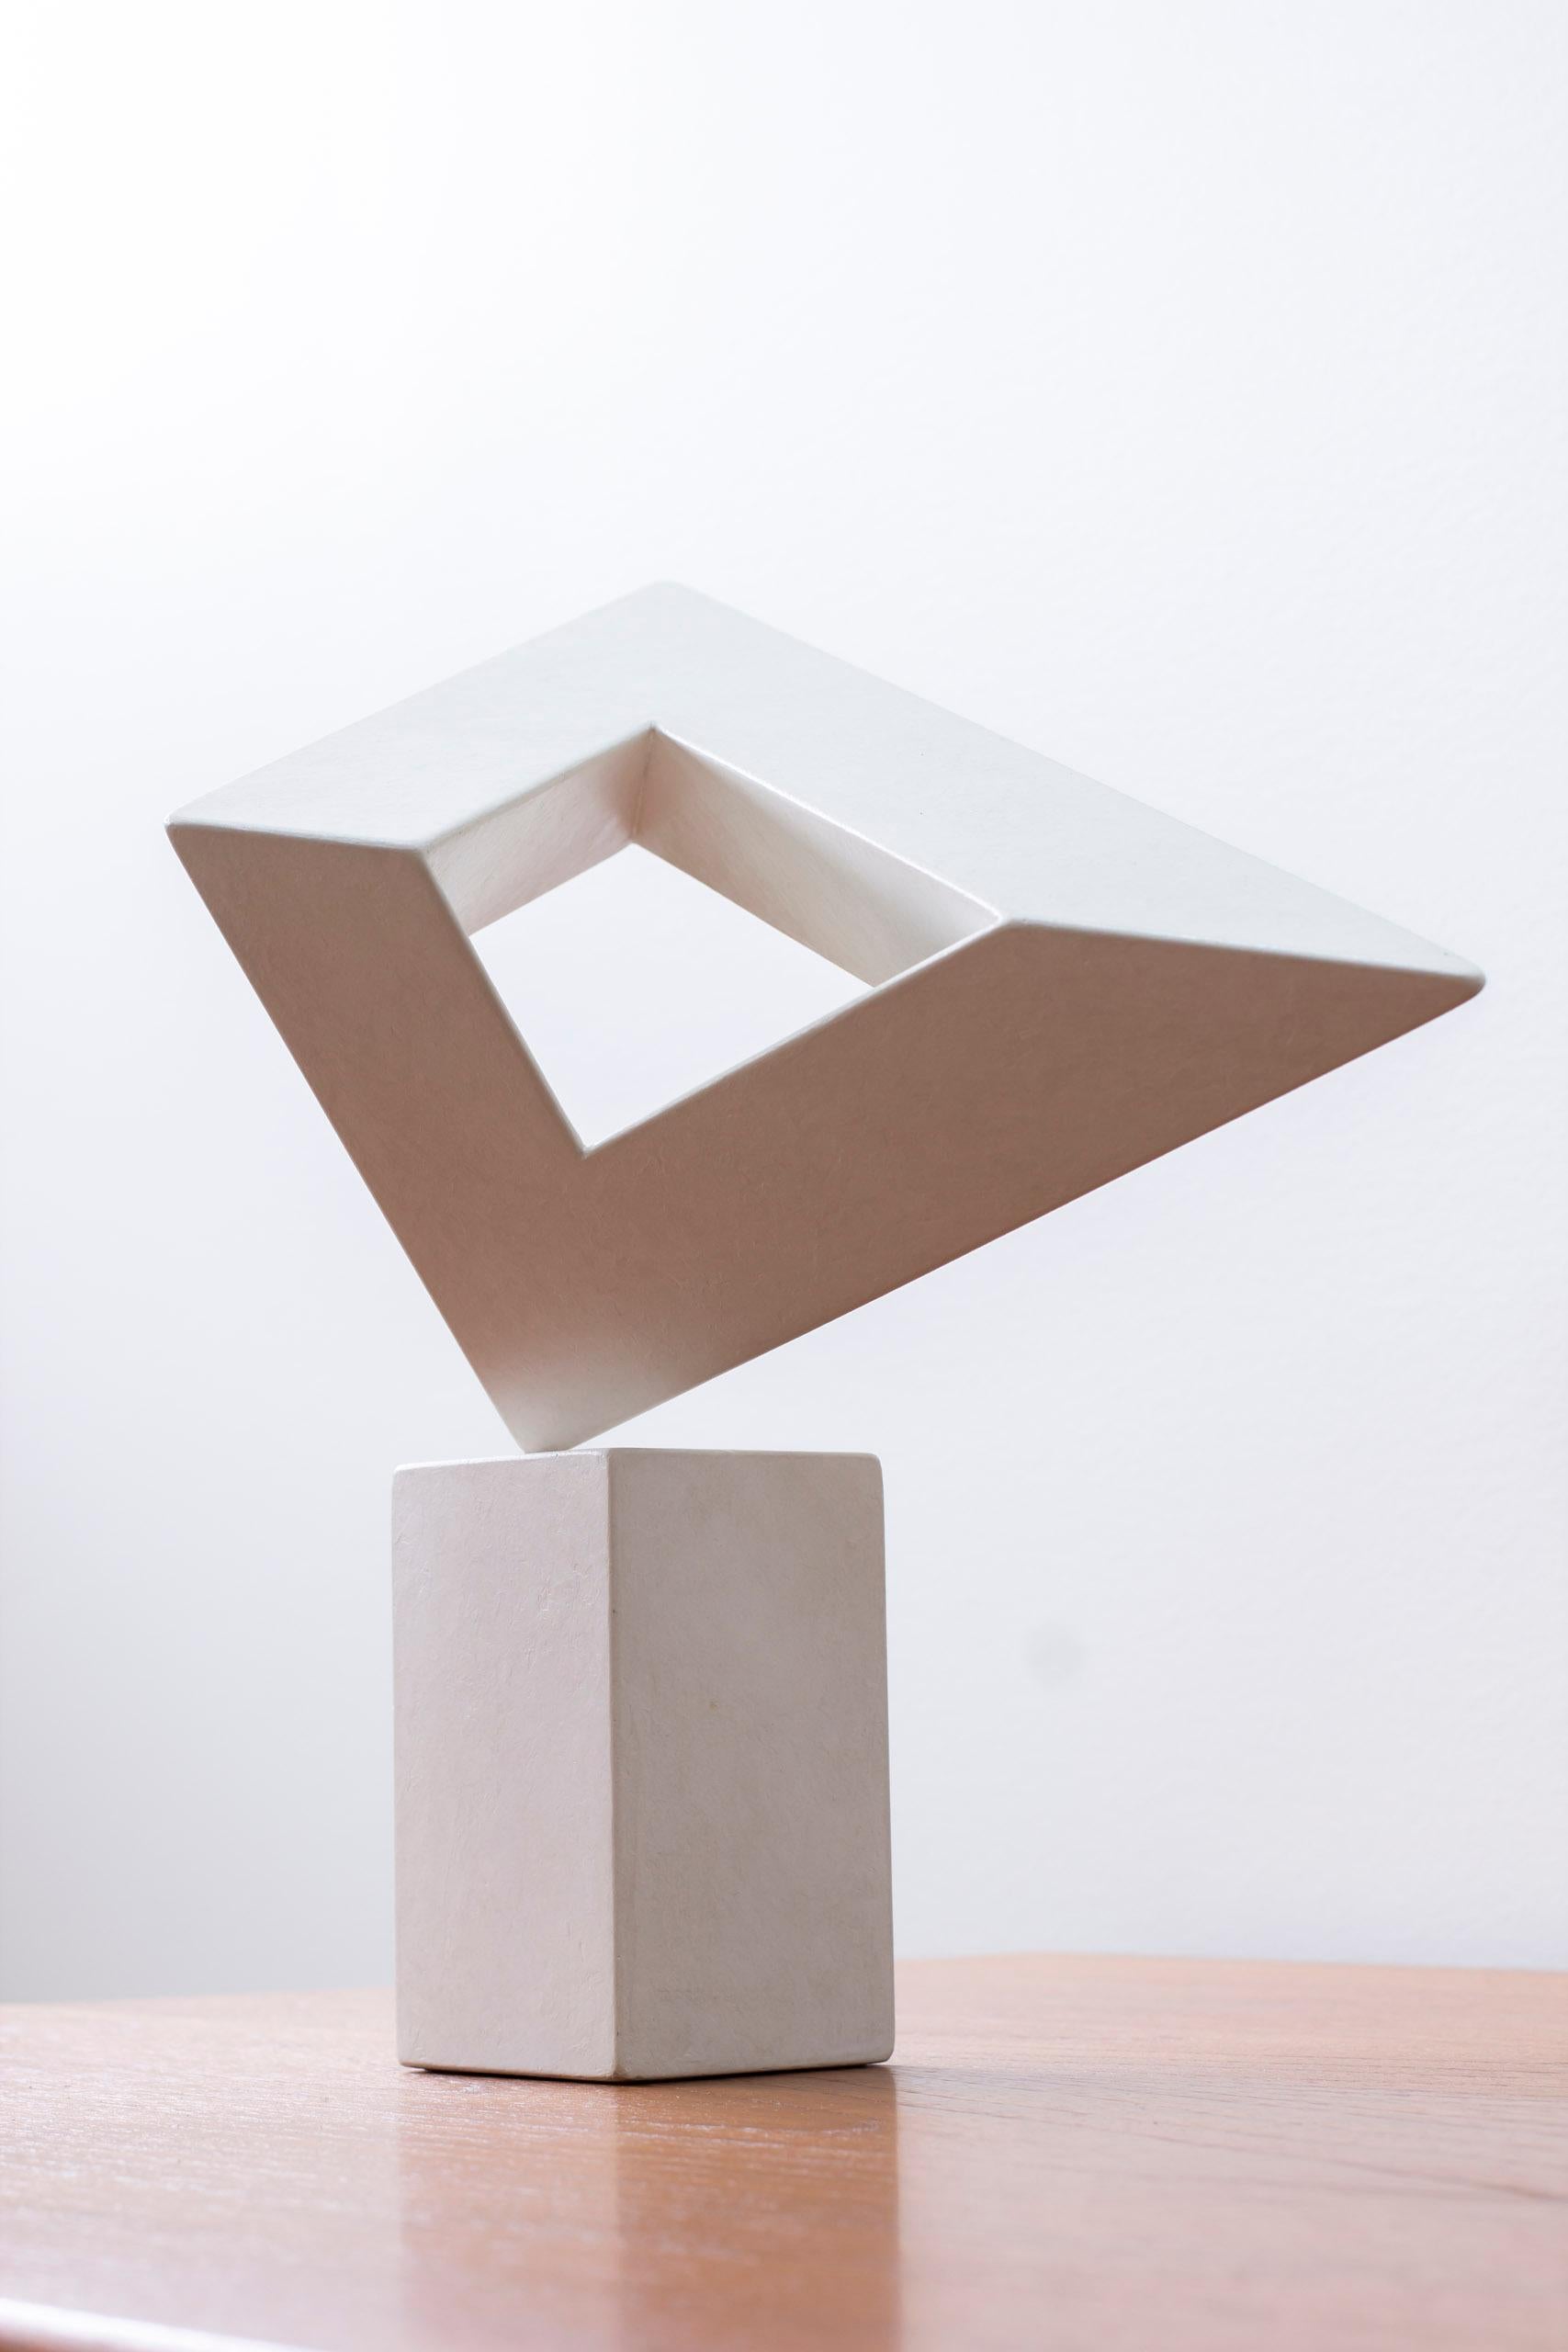 Suédois Sculpture de l'artiste américain David Eisenhauer. Techniques mixtes, Suède 1985 en vente